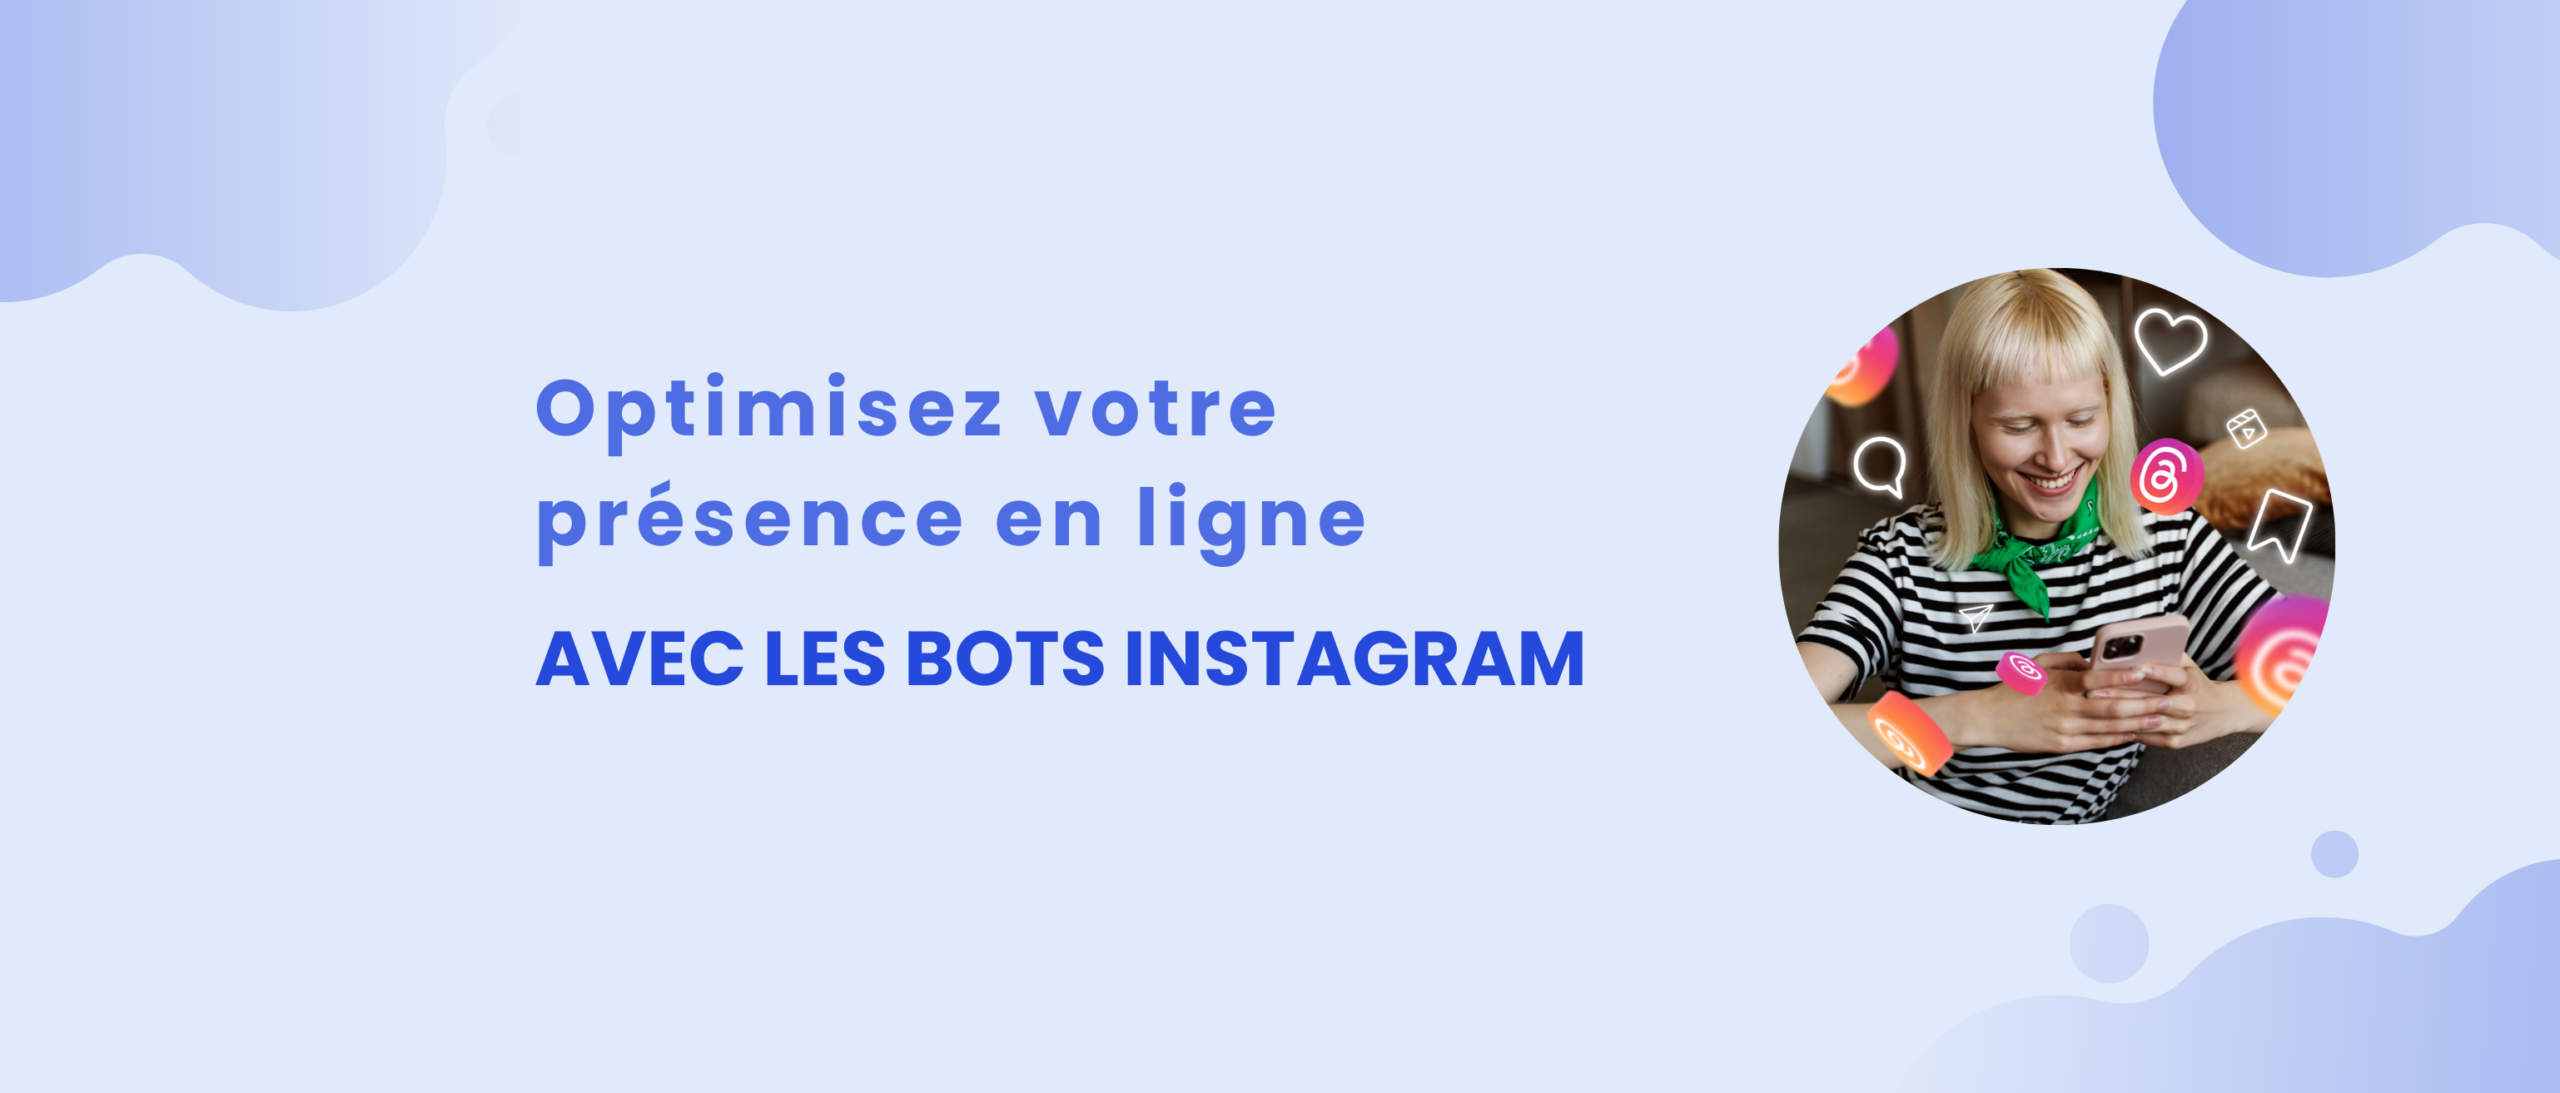 Comment utiliser les bots Instagram pour développer votre présence en ligne